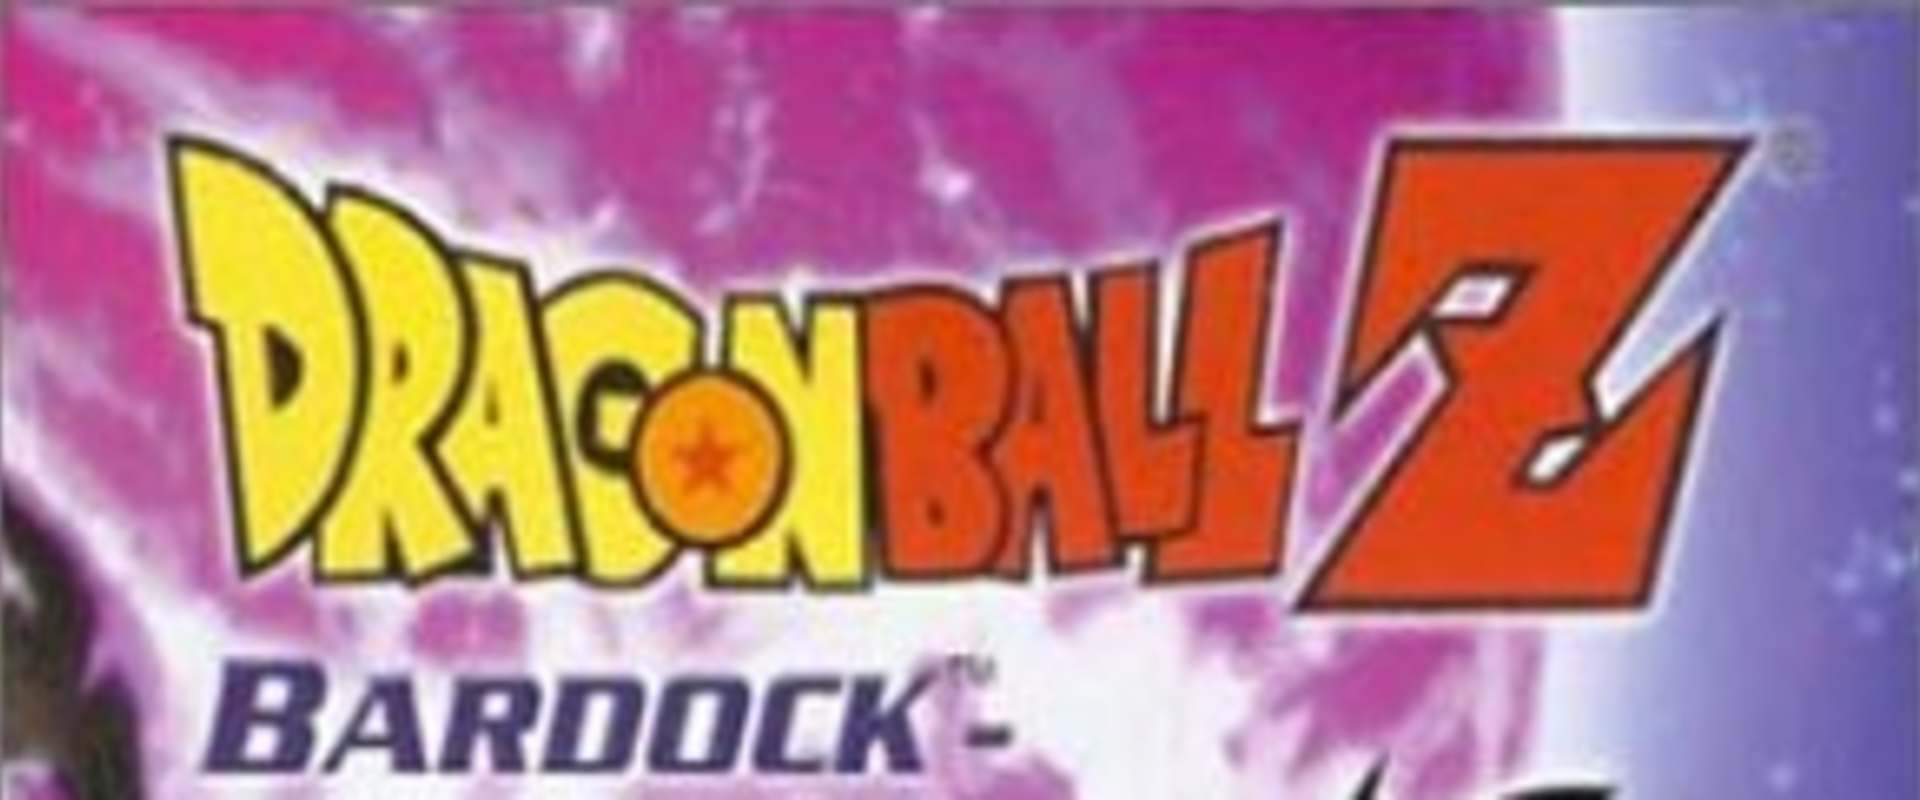 Dragon Ball Z: Bardock - The Father of Goku background 1